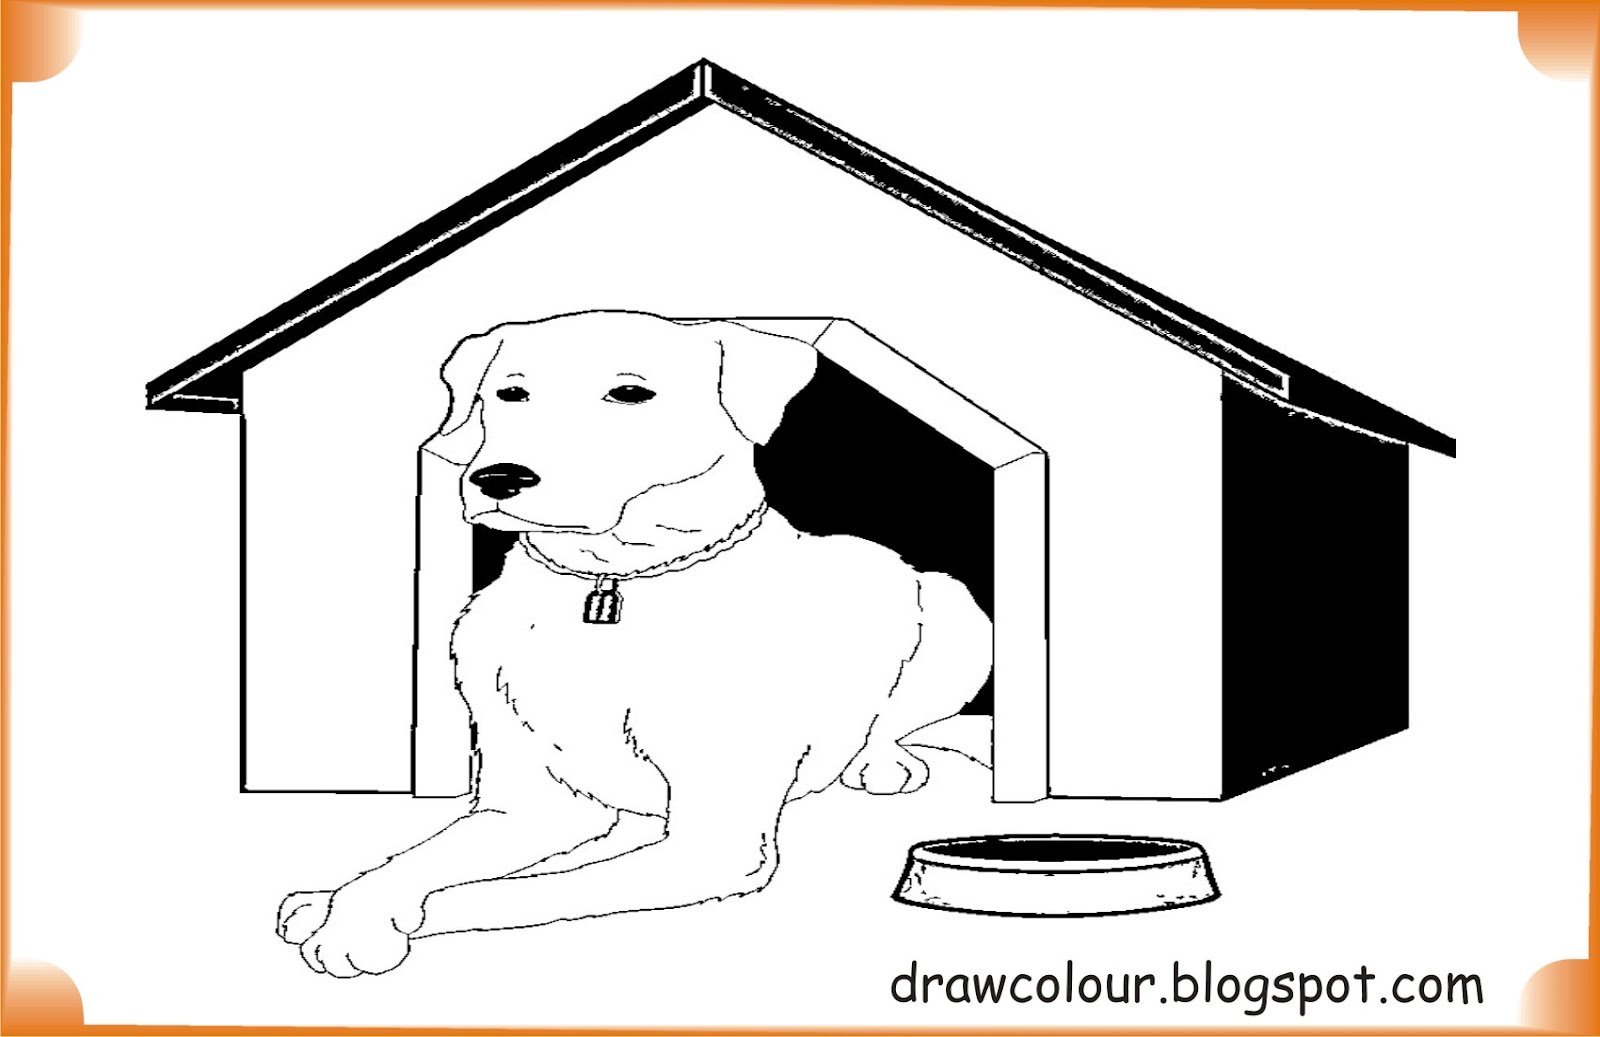 Жилище собаки картинки для детей. Dogs House Coloring. Dog in the House Clipart черно-белая. Рисунок на конкурс хвостик дог Хаус для детей. Animals house перевод